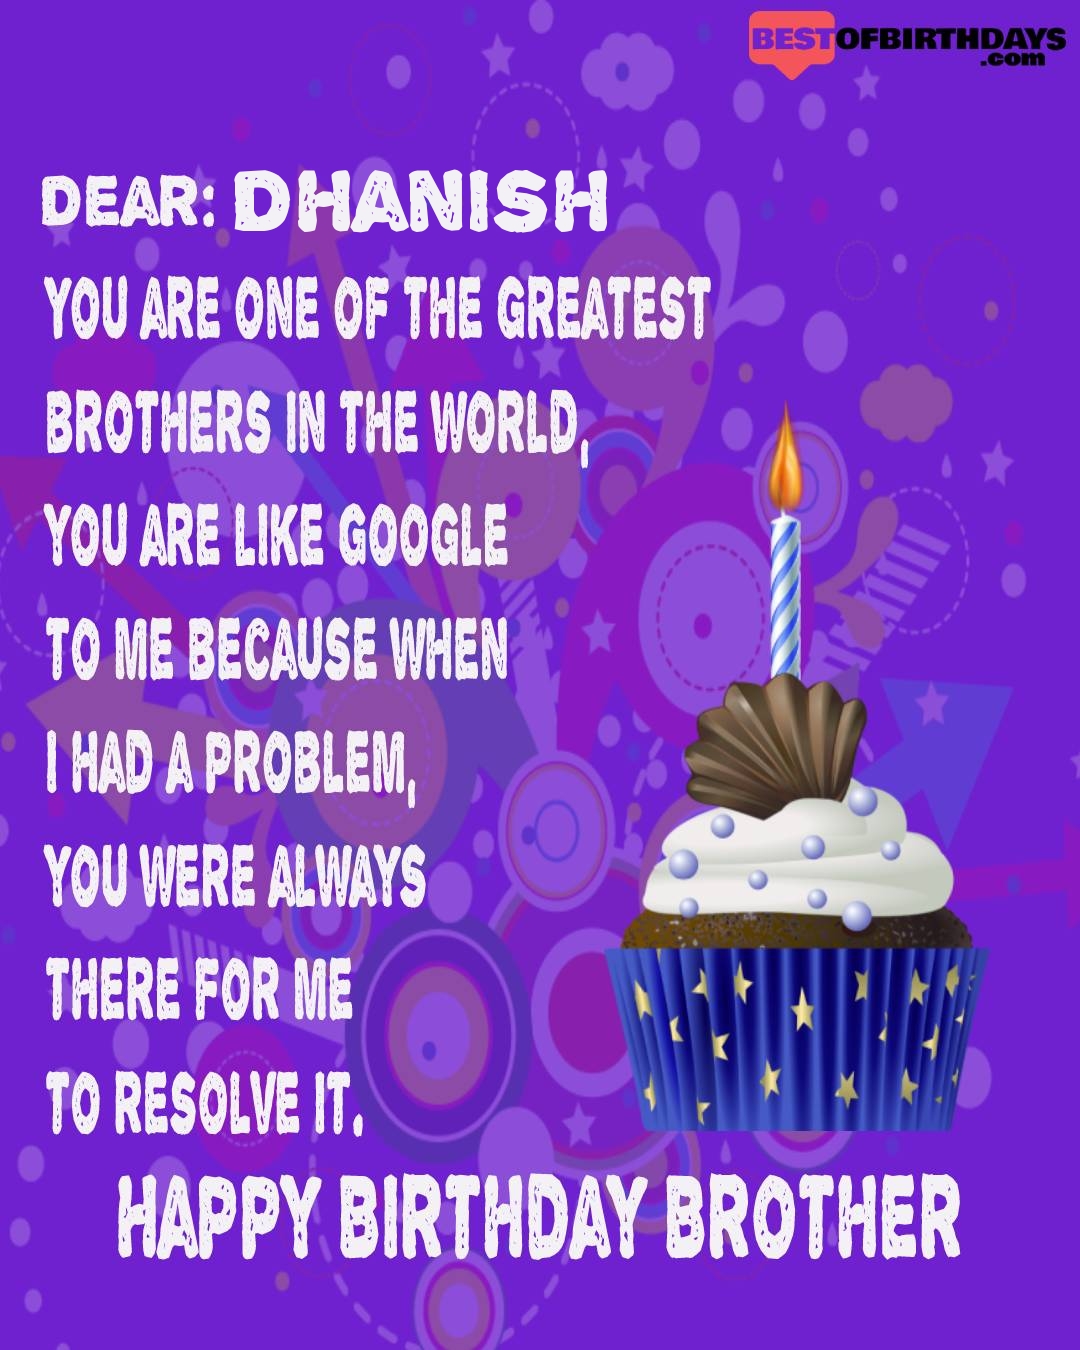 Happy birthday dhanish bhai brother bro